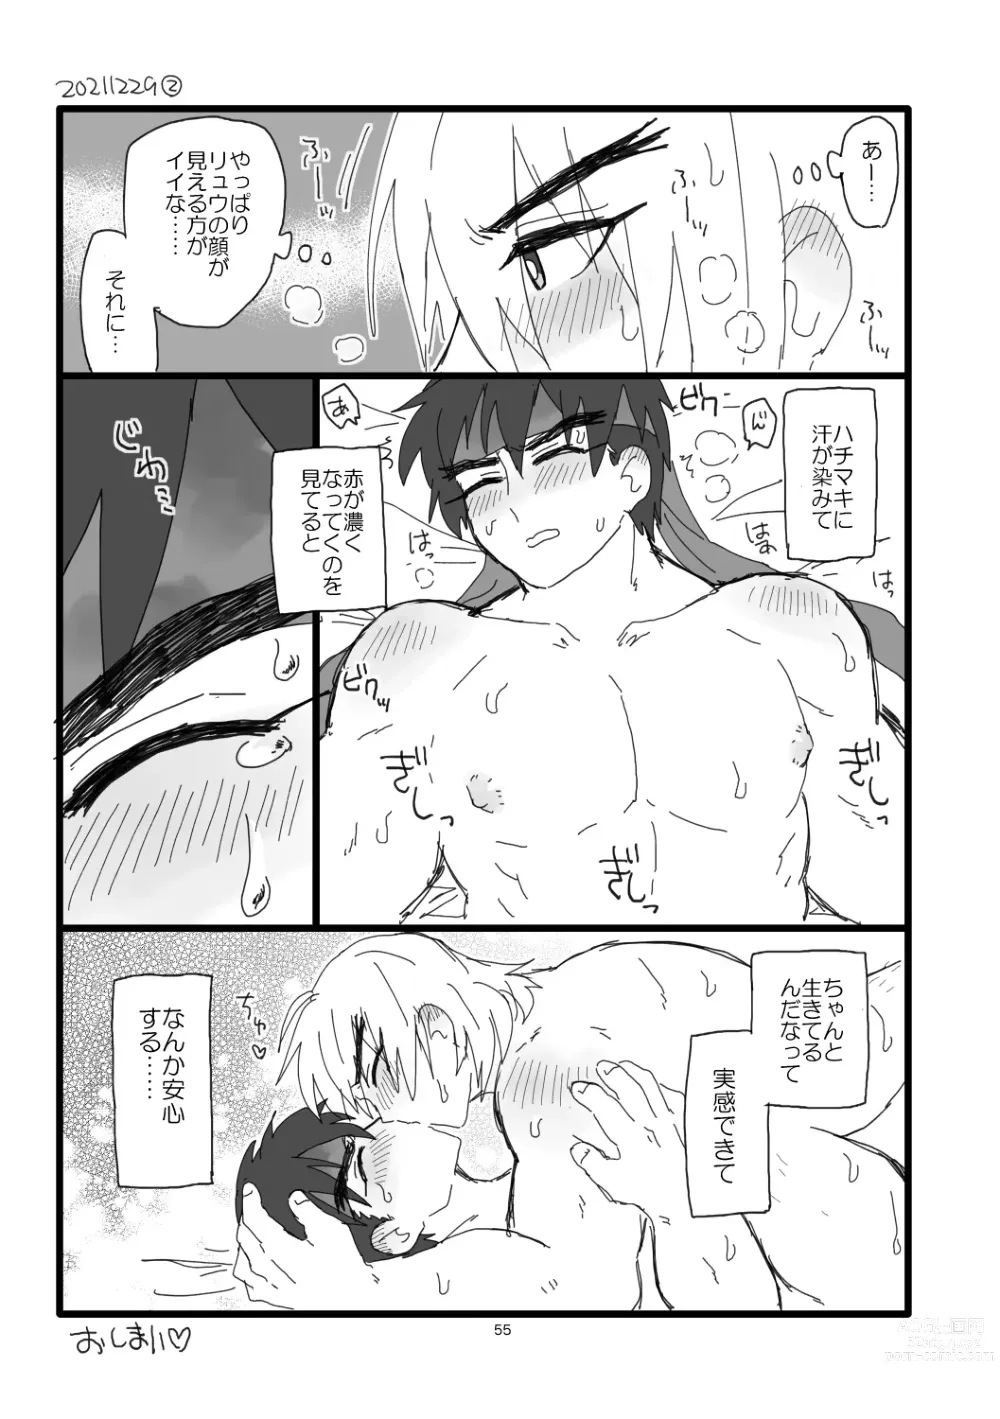 Page 54 of doujinshi Kobushi Kiss